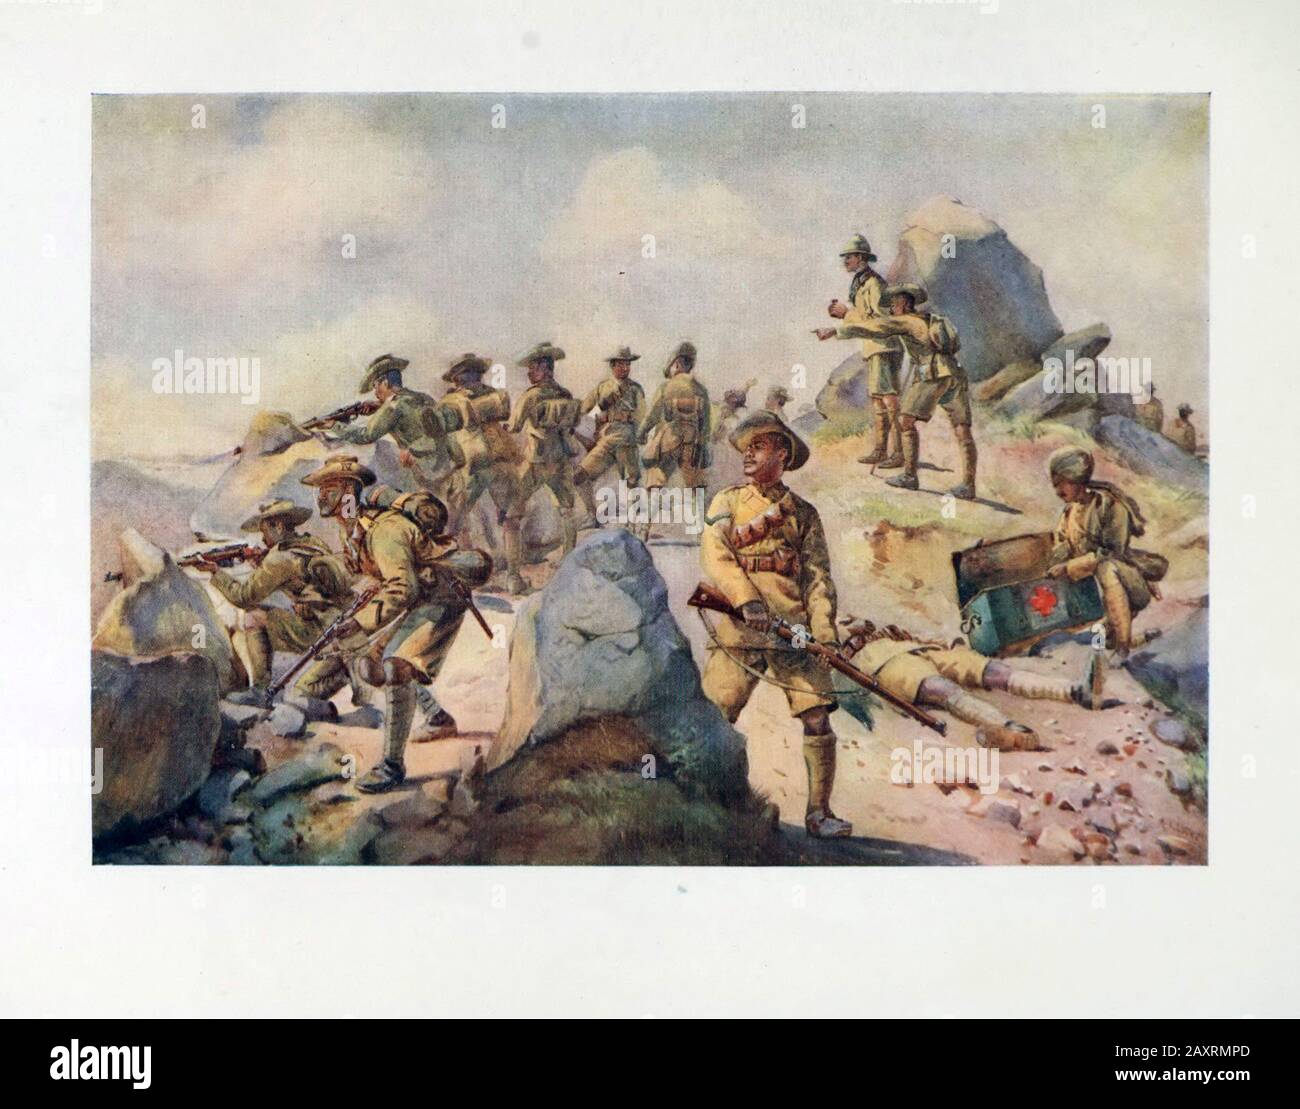 Armeen Indiens. Von Major A.C. Lovett. London. 1911. Gurkha-Gewehre. "Eine Aktion des Rückschutzes". Stockfoto